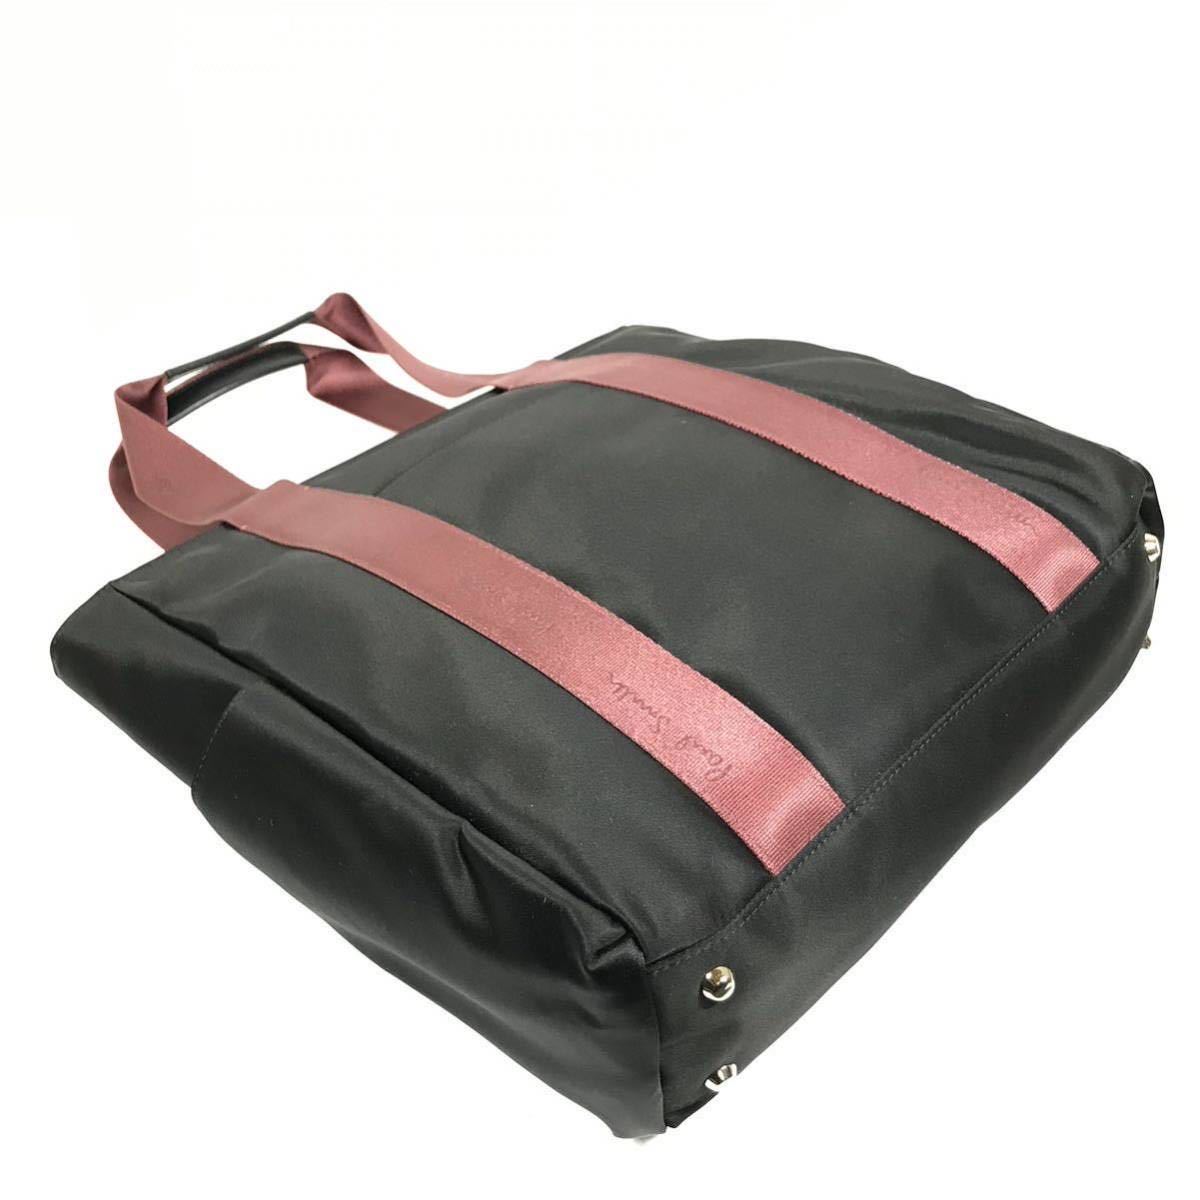  обычная цена 2.8 десять тысяч иен ^ не использовался товар [ Paul Smith ] подлинный товар Paul Smith большая сумка чёрный цвет серия сумка на плечо нейлон × кожа мужской женский 